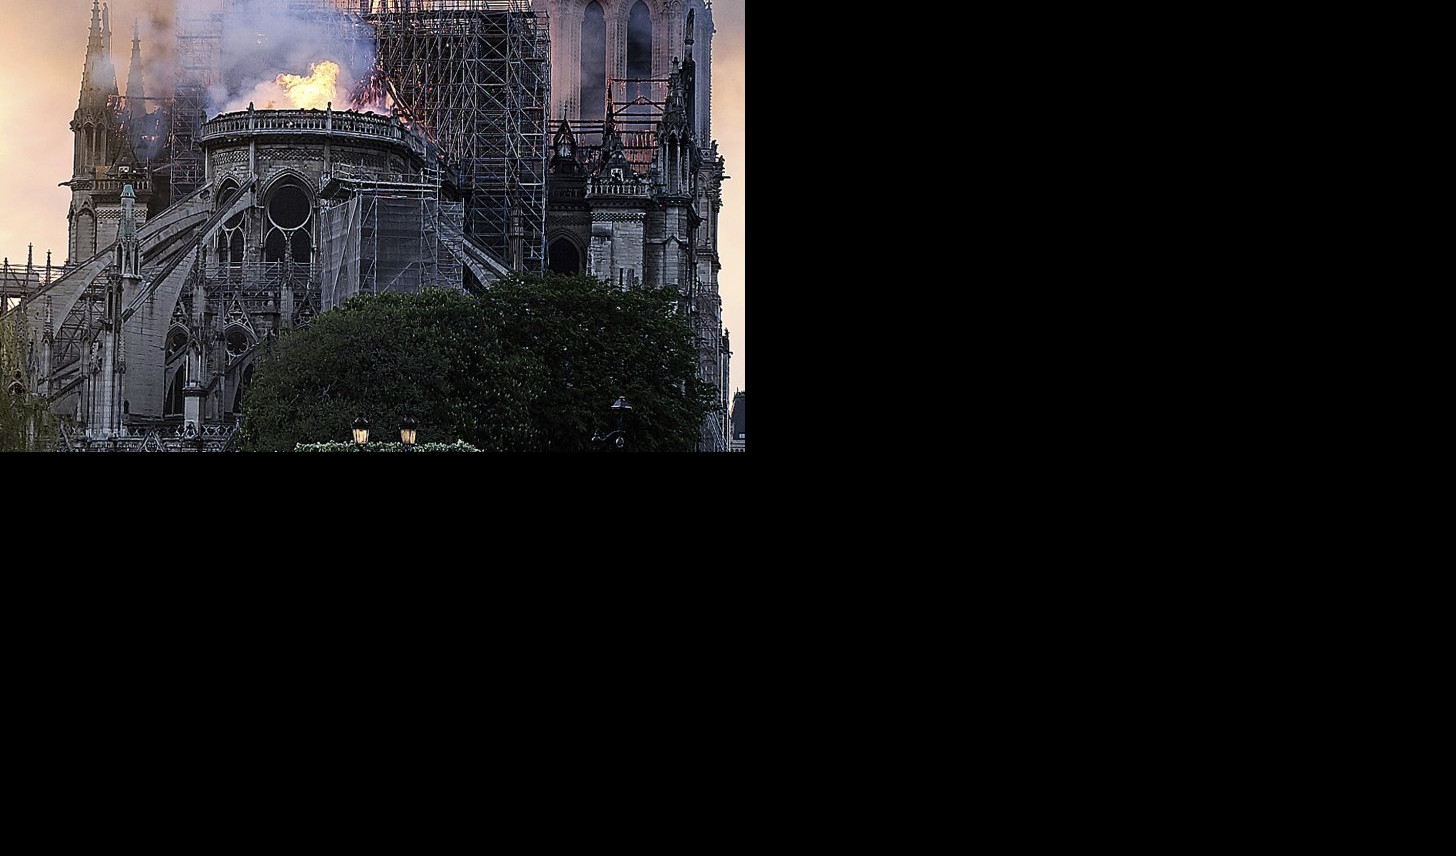 KRATAK SPOJ ZAPALIO NOTR DAM?! Požar buknuo u dizalici korišćenoj tokom obnove katedrale?